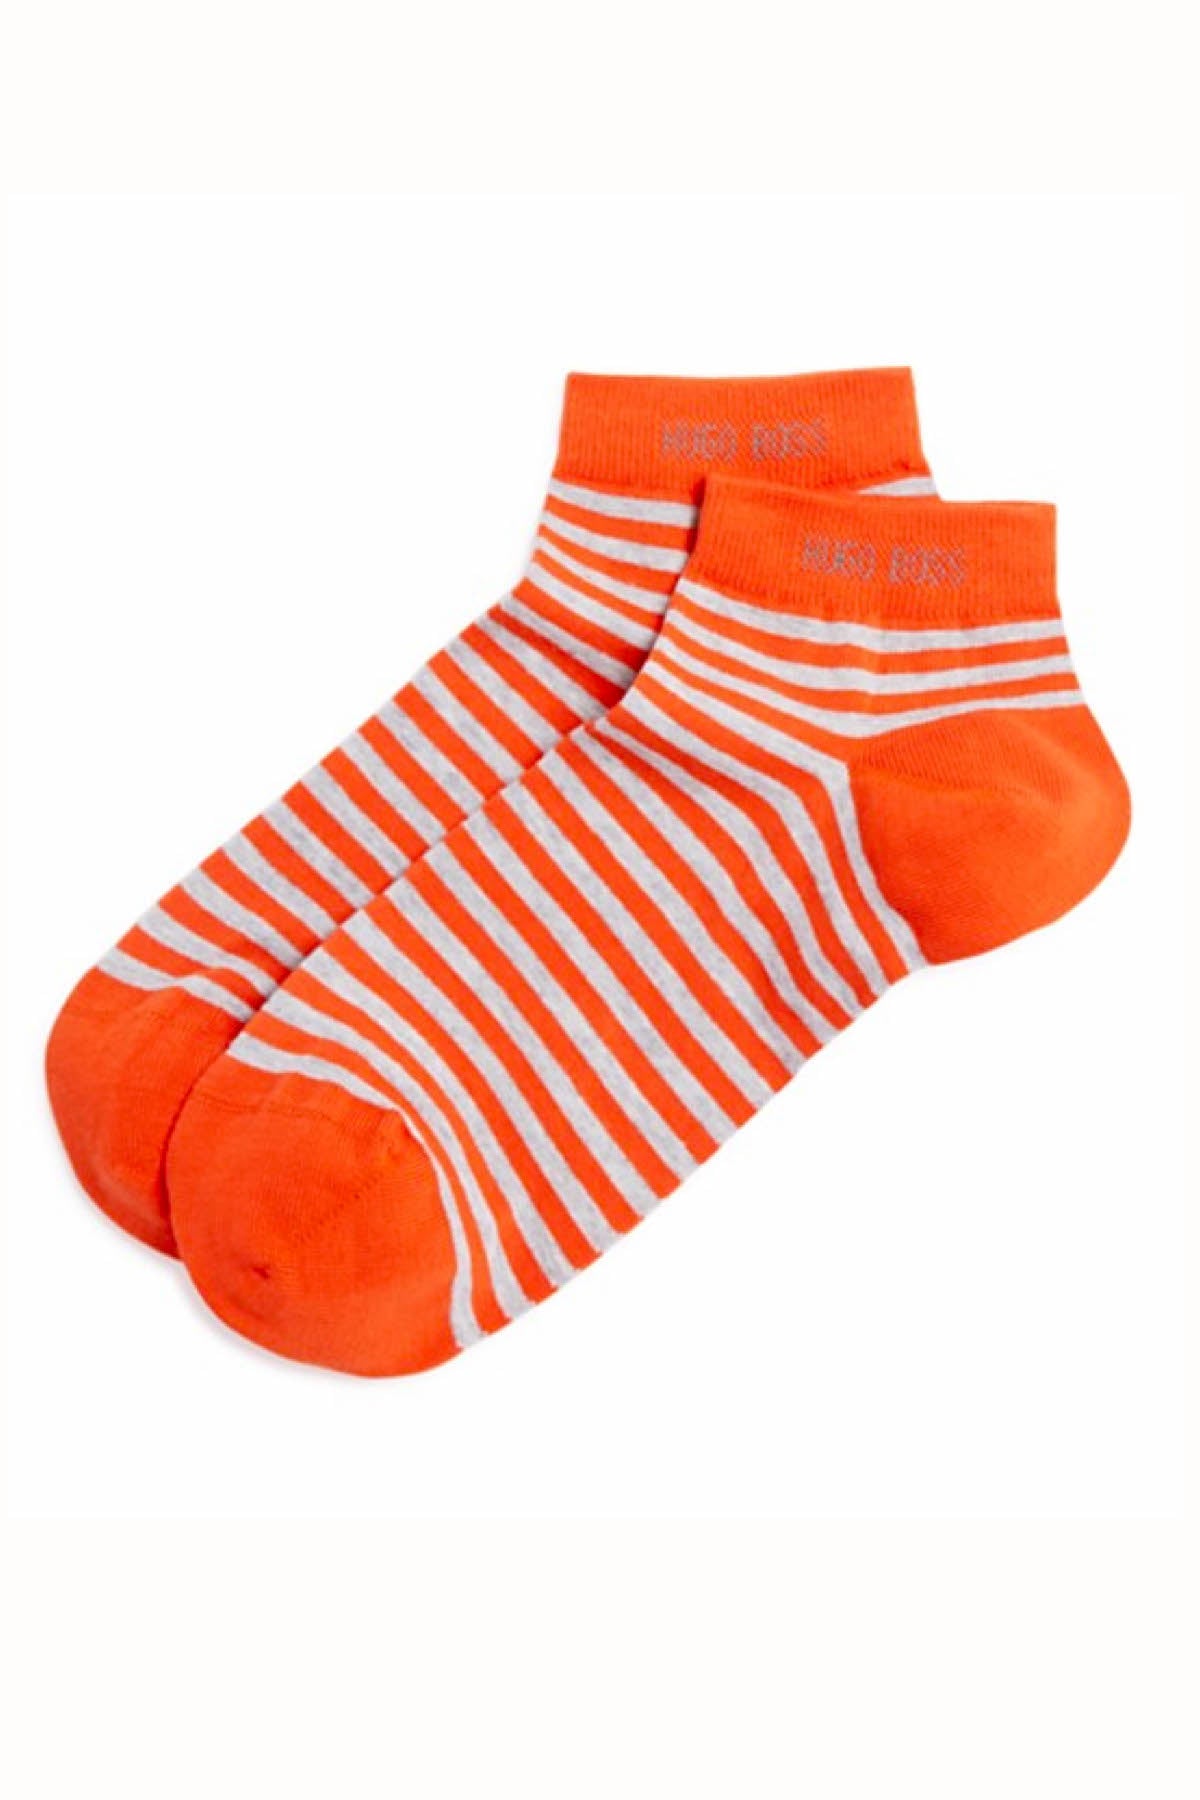 Hugo Boss Orange & Grey Stripe Marc Sneaker Low-Cut Sock